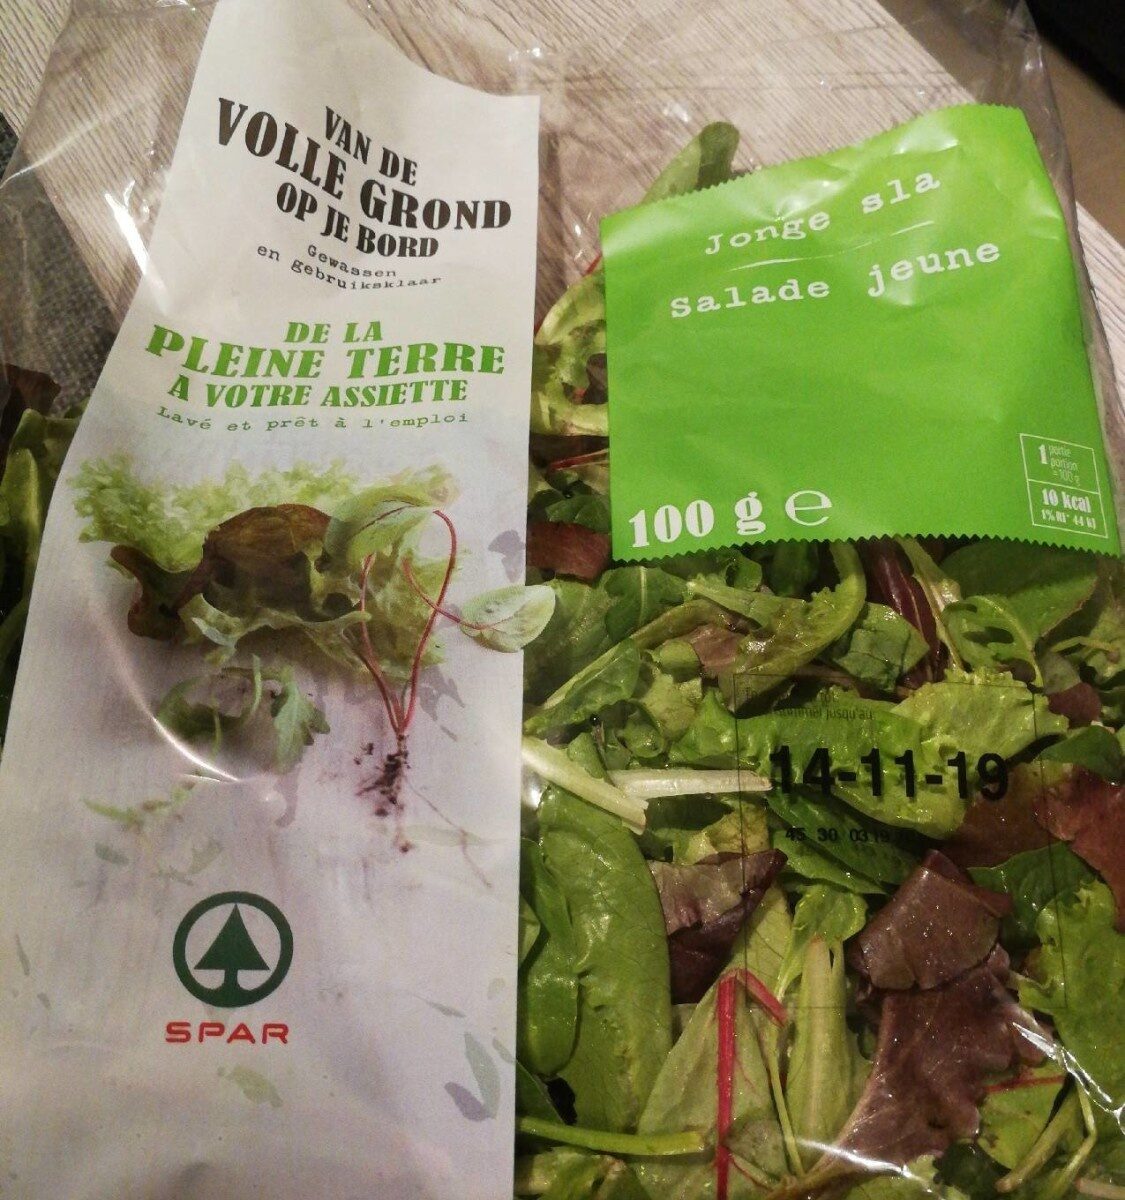 Salade jeune - Voedingswaarden - fr